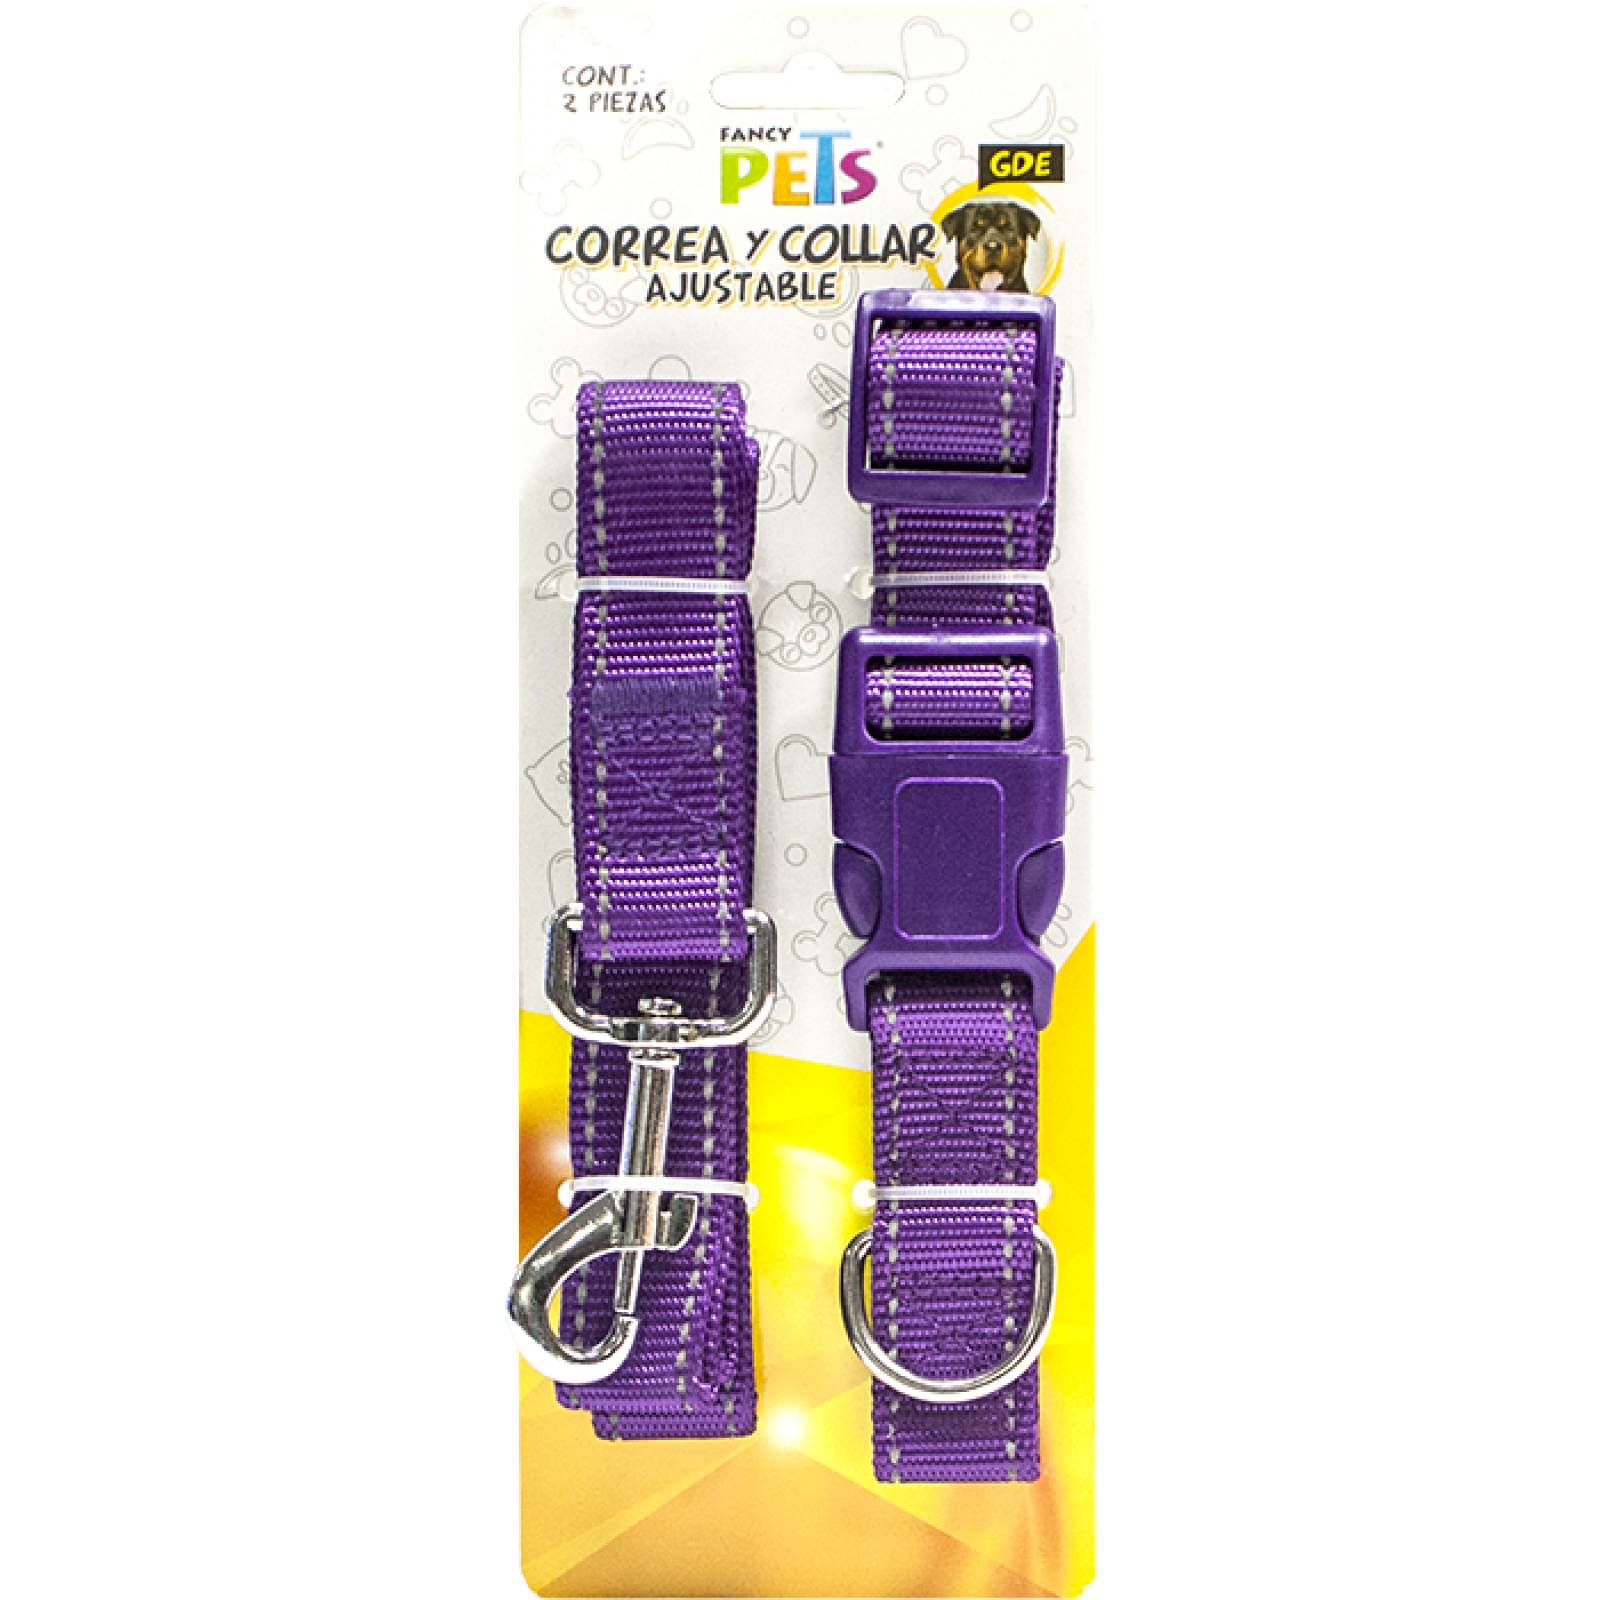 Fancy Pets Collar y Correa para Perro de Nylon ajustable con Bandas reflejantes Gde